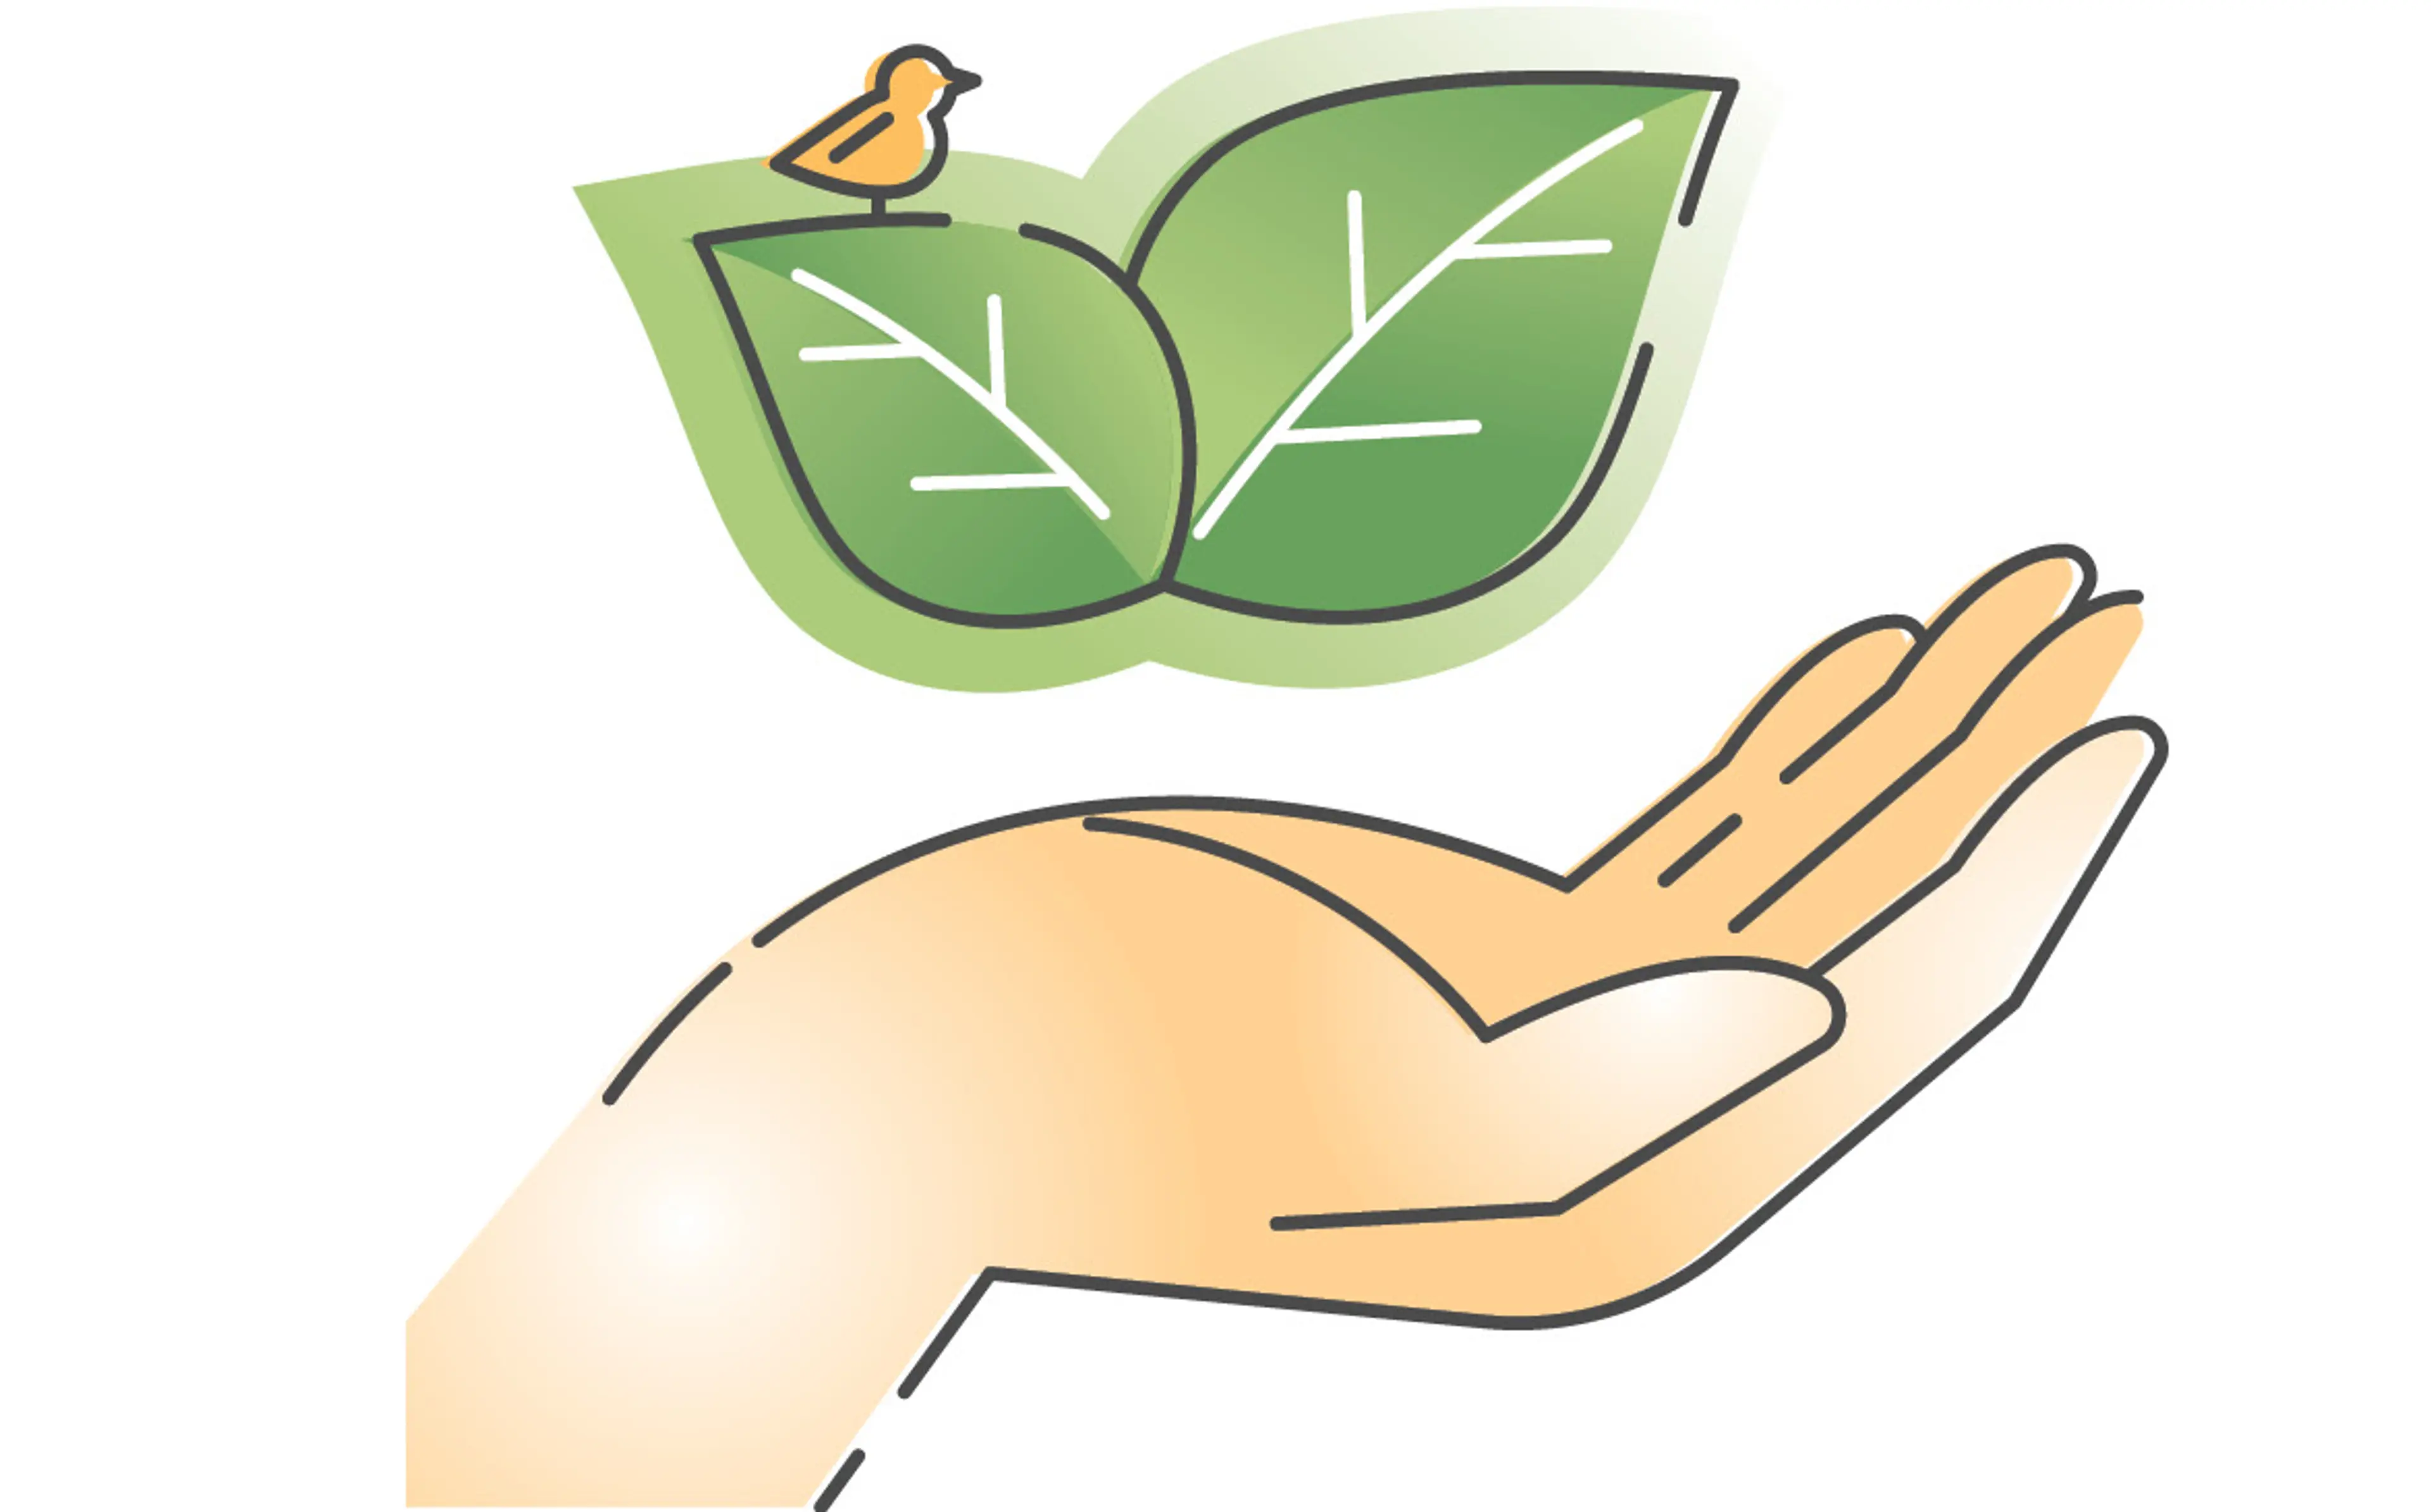 Illustrasjon avblader med fugl som svever over åpen hånd